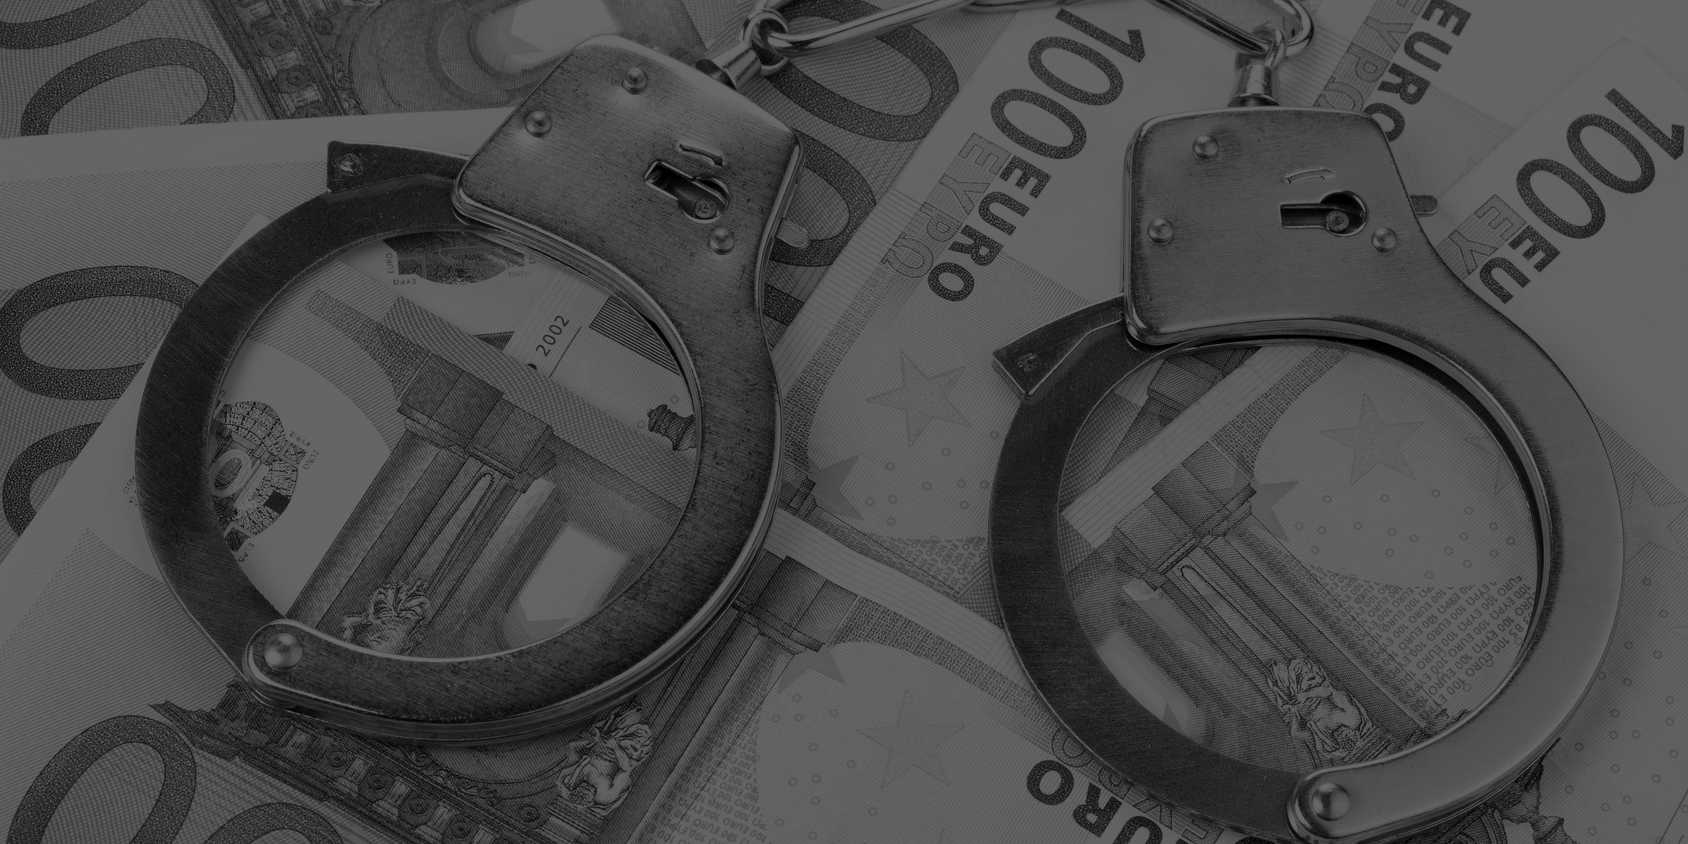 Handschellen liegen auf Geldschein, bildlich für Freiheitsstrafe und Geldstrafe im Strafrecht auch in Dortmund